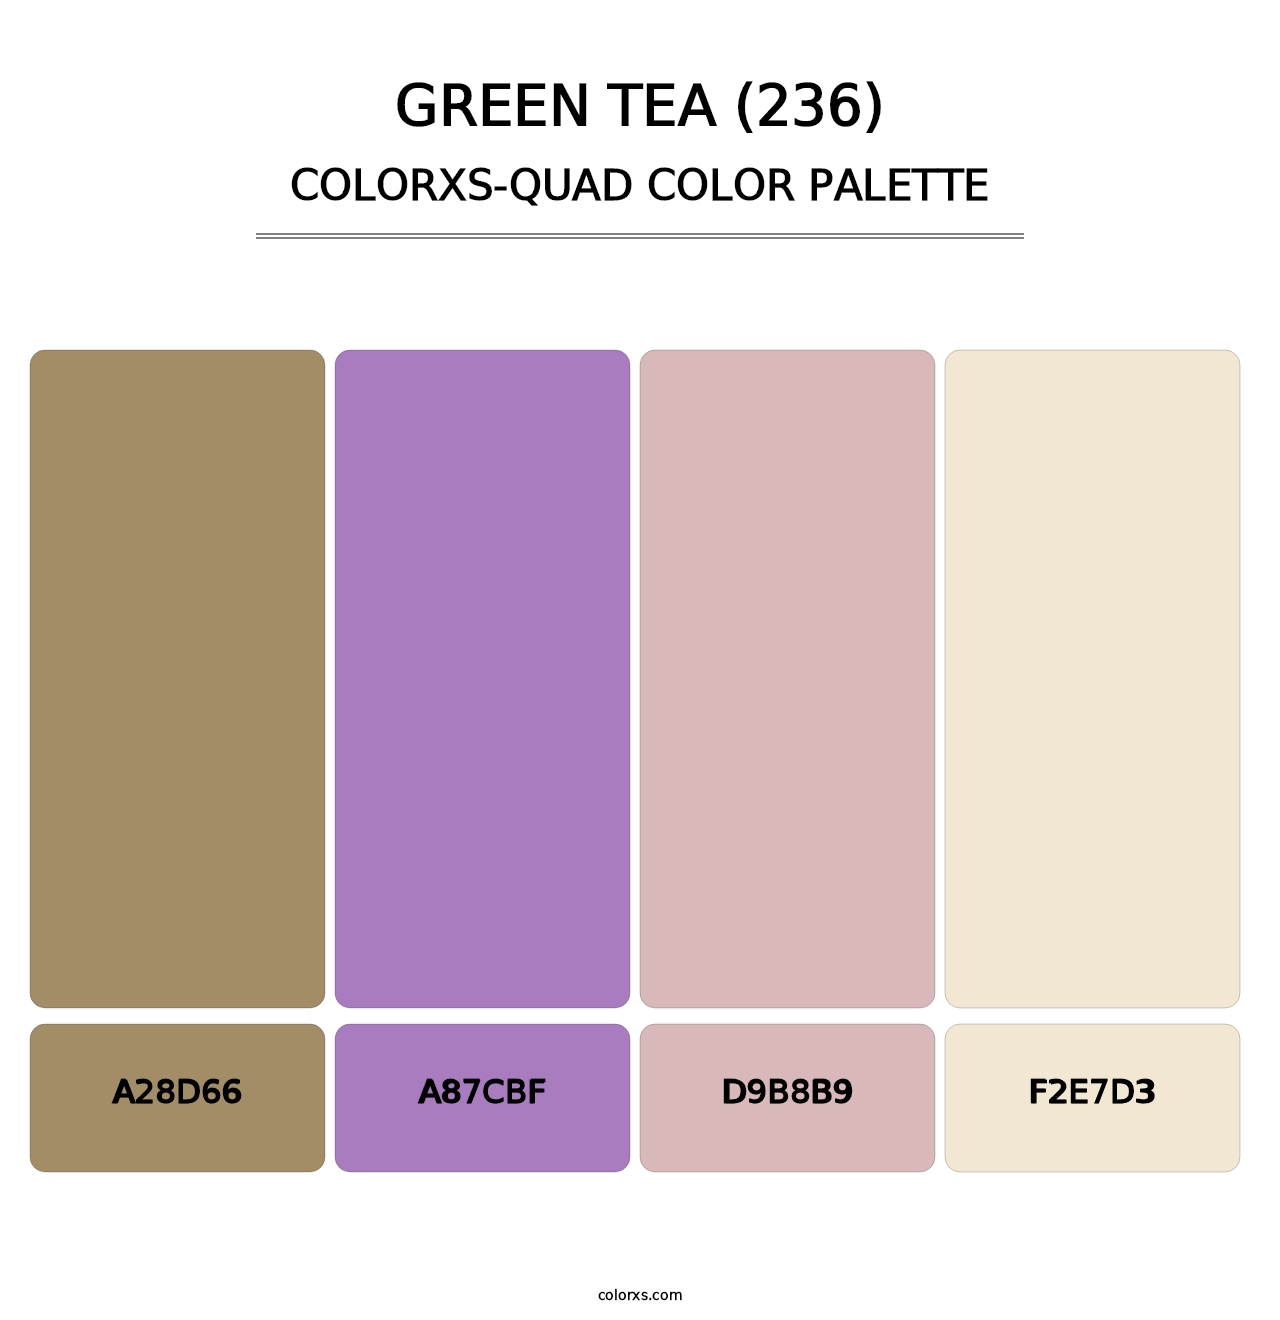 Green Tea (236) - Colorxs Quad Palette